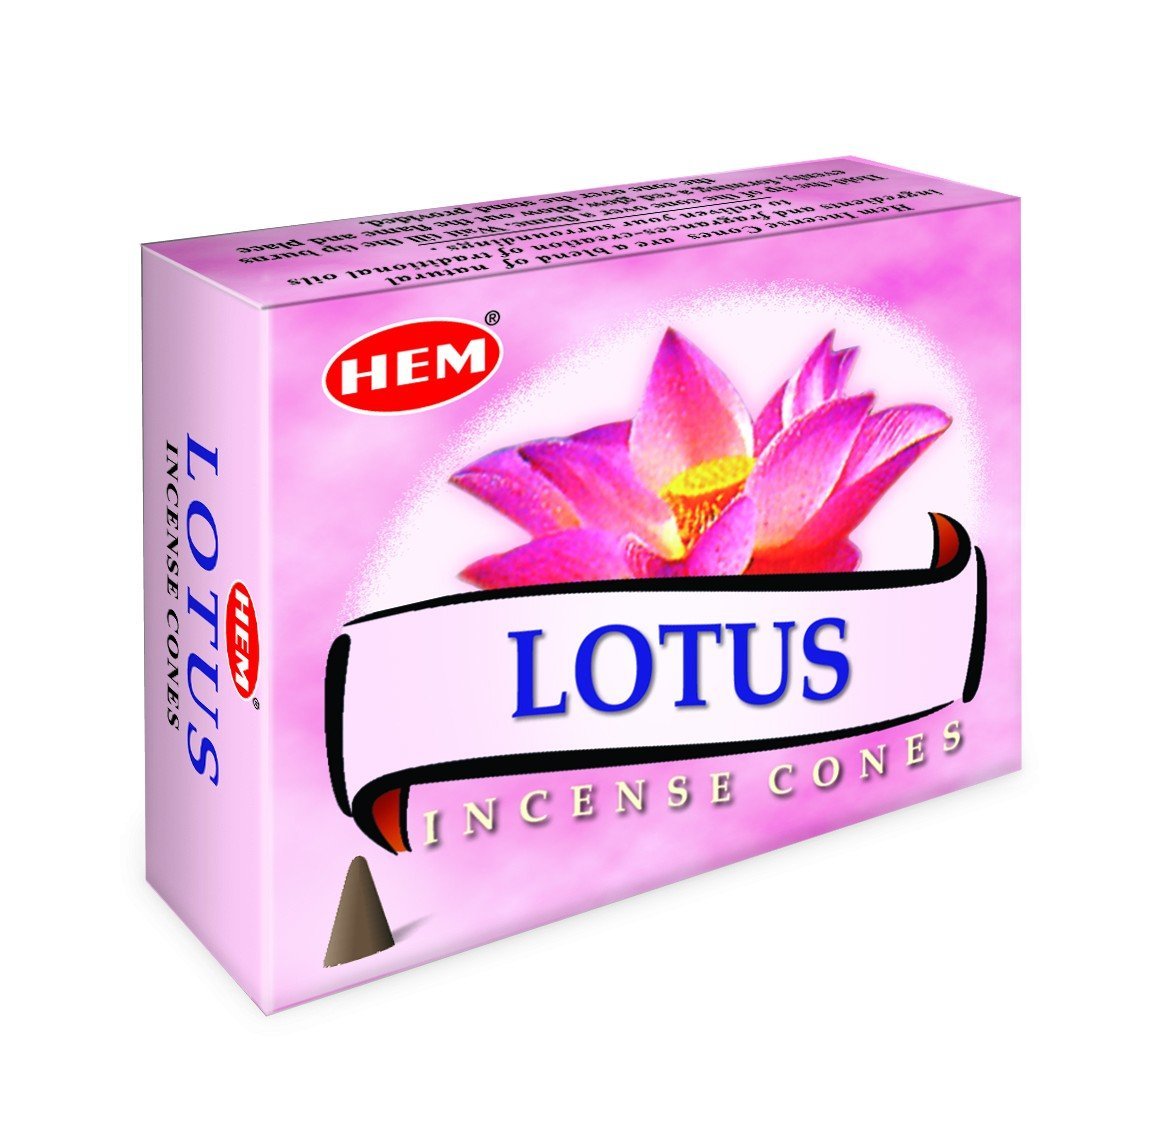 HEM - Lotus - 120 Incense Cones